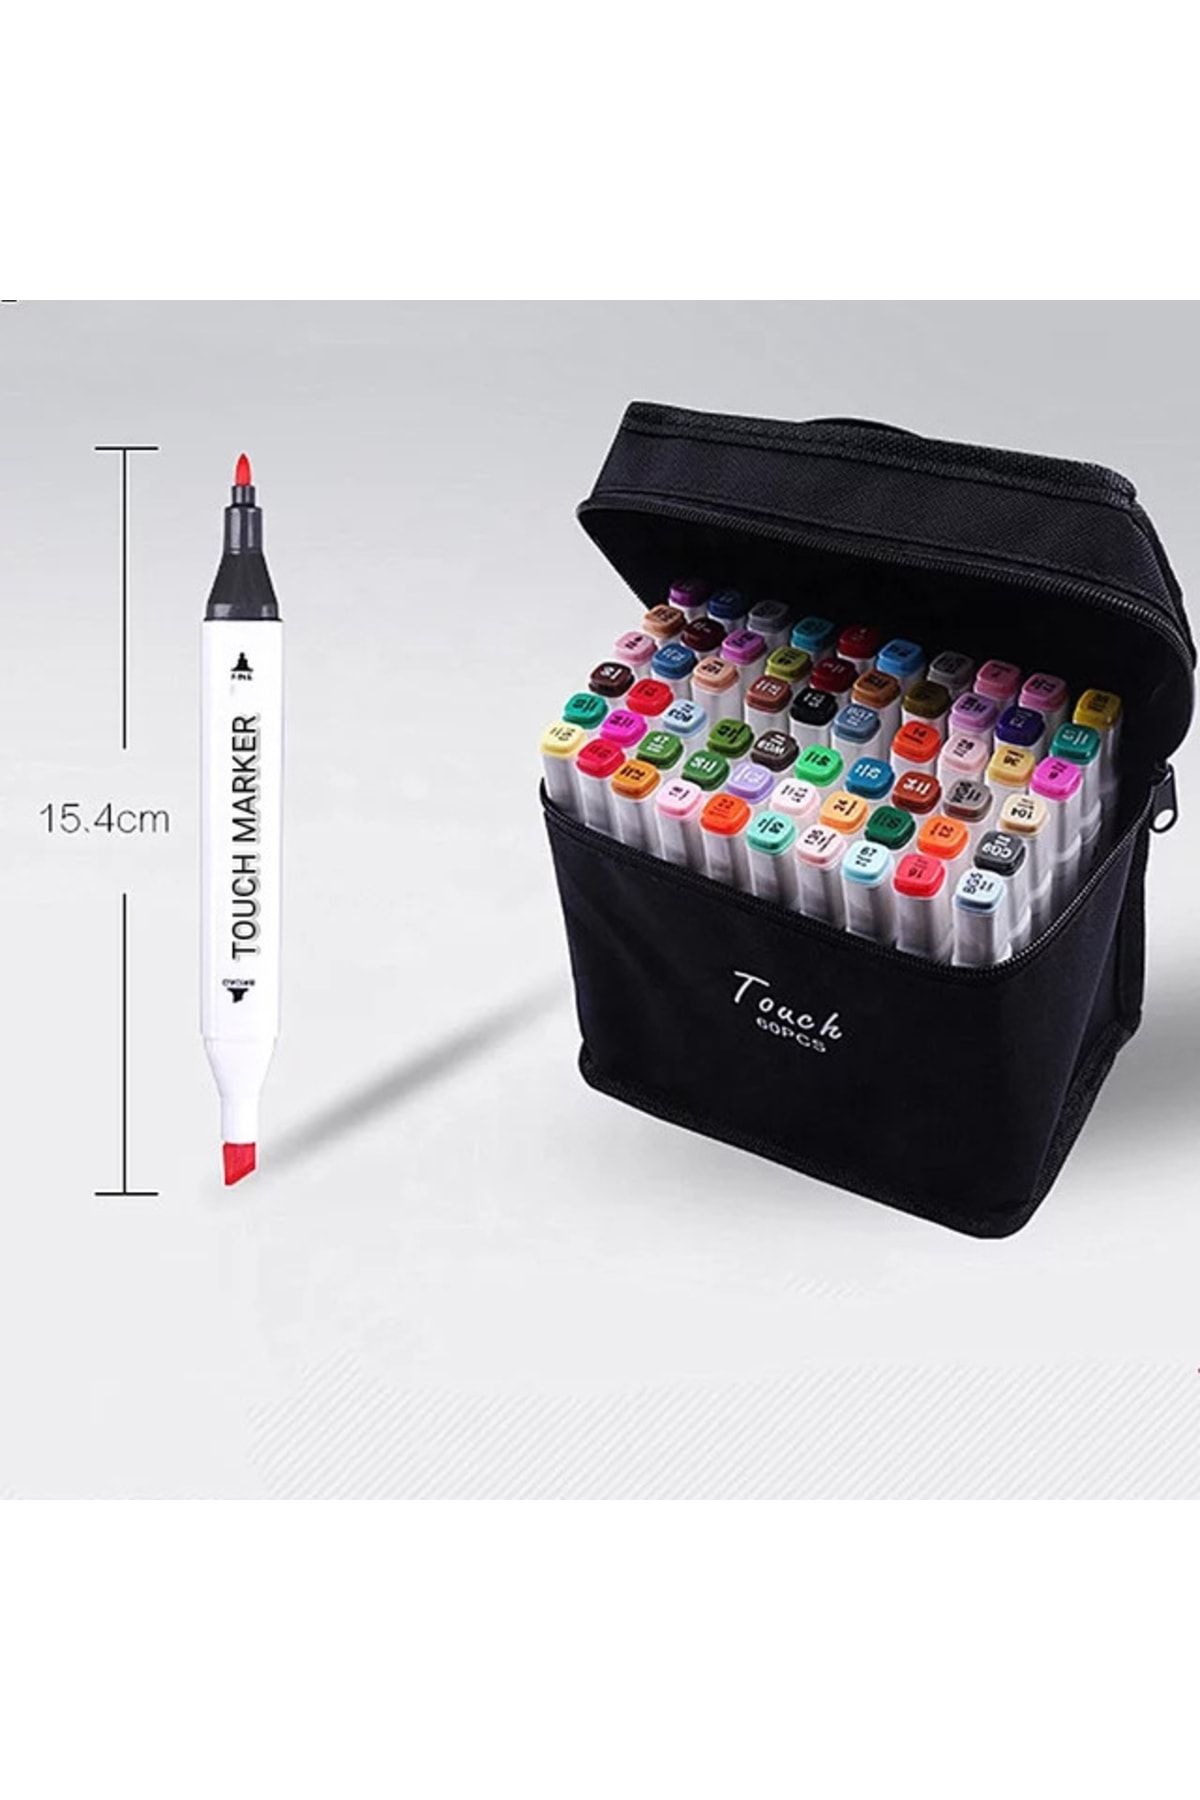 KAPVOE 60 Adet Çift Uçlu Touch Marker Art Tasarım Keçeli Kalem Boya Seti  Çanta Hediyeli Fiyatı, Yorumları - Trendyol